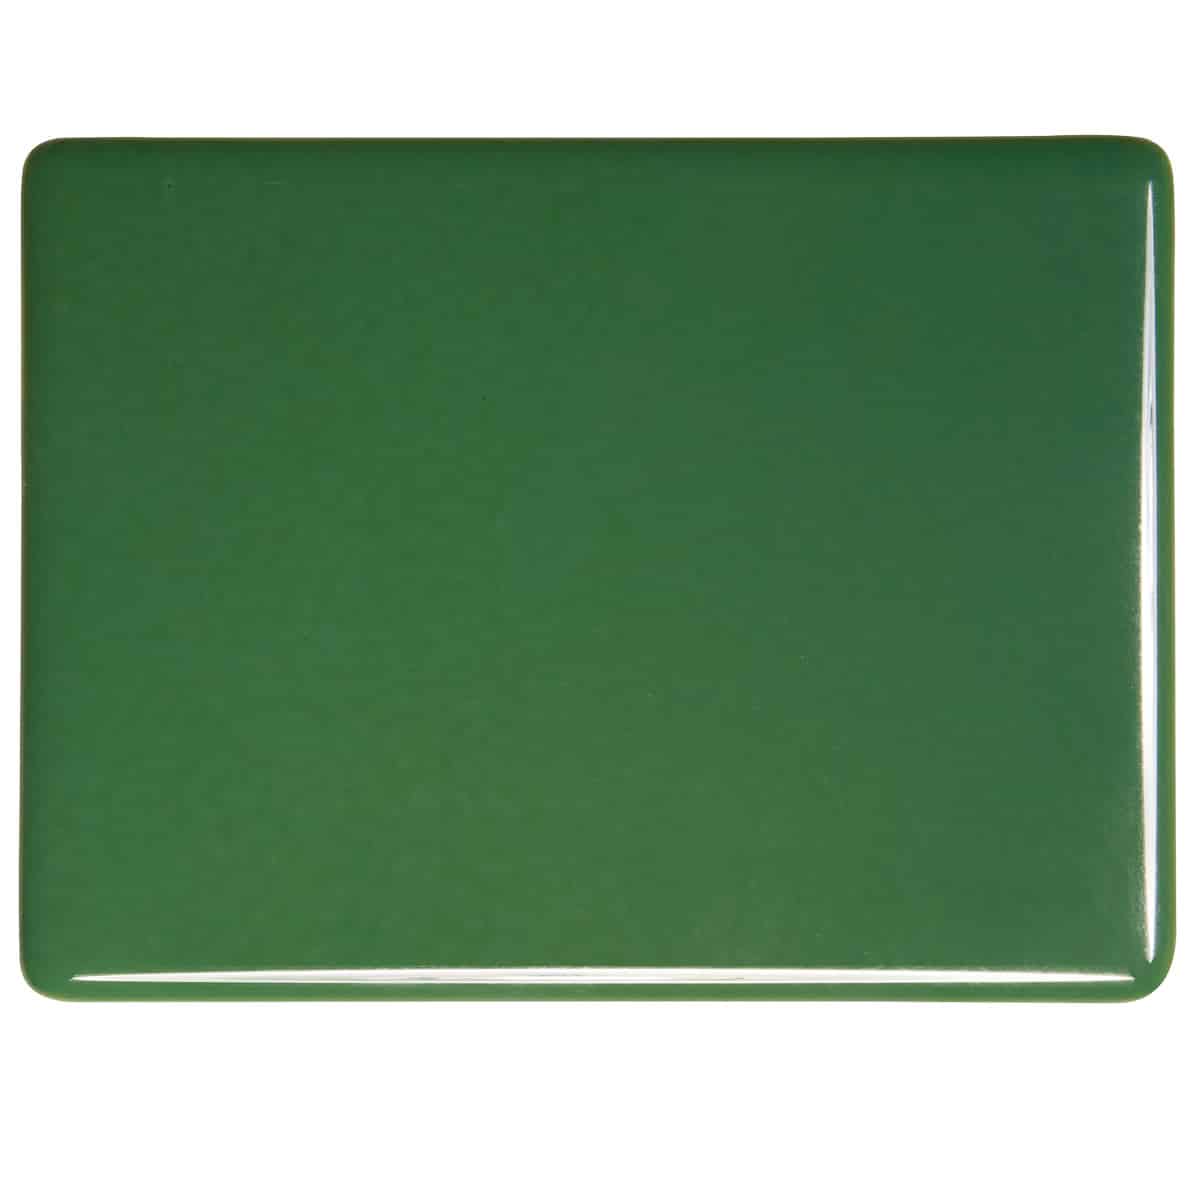 Dark Forest Green Opal sheet glass swatch